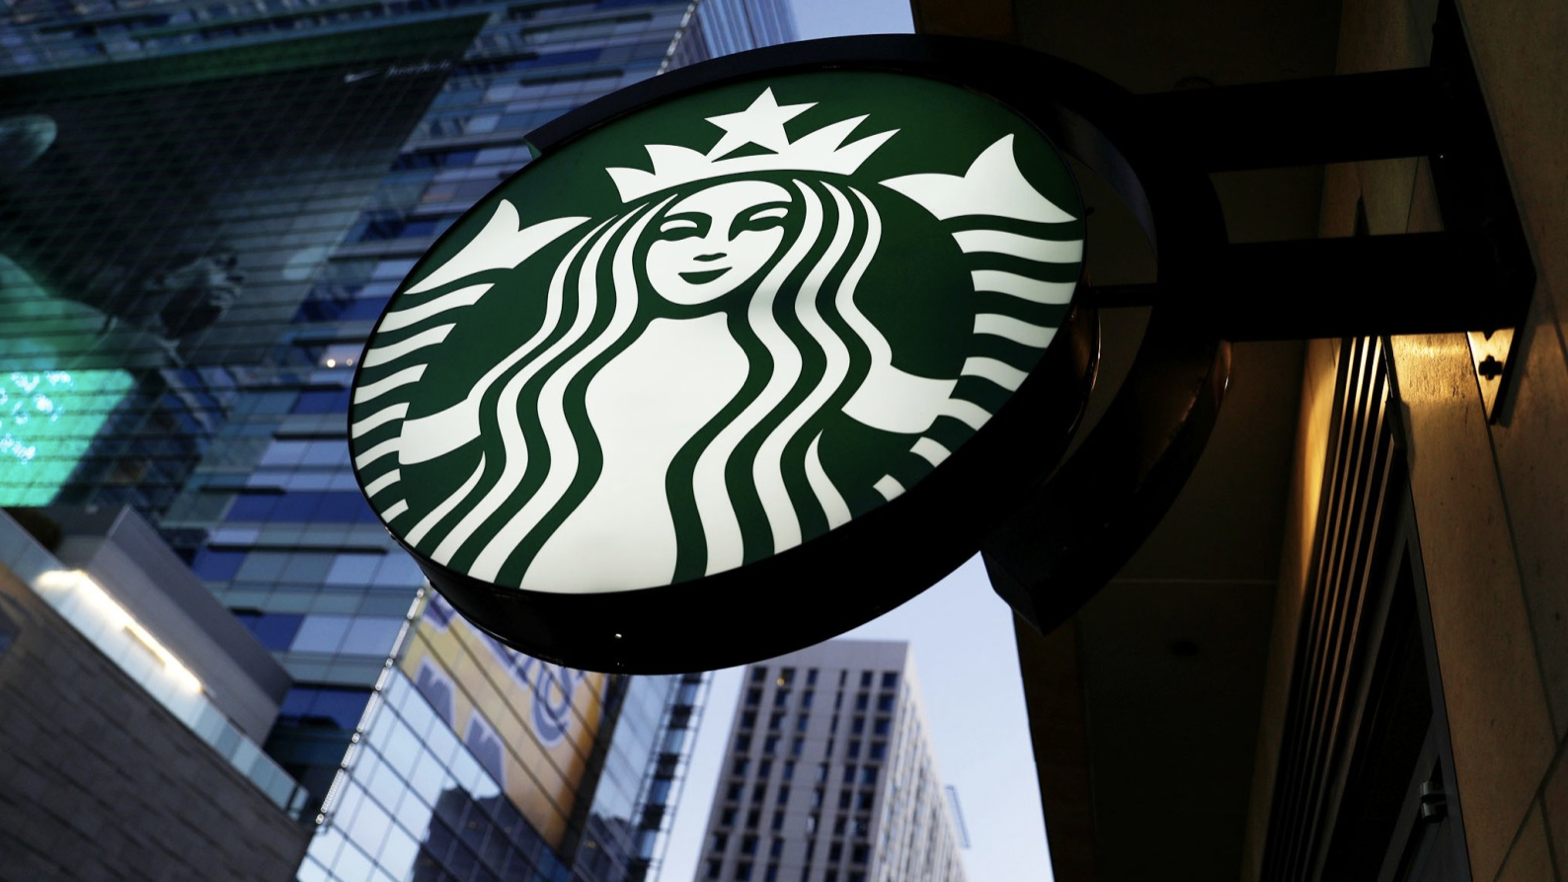 Starbucks Siren Sign in LA